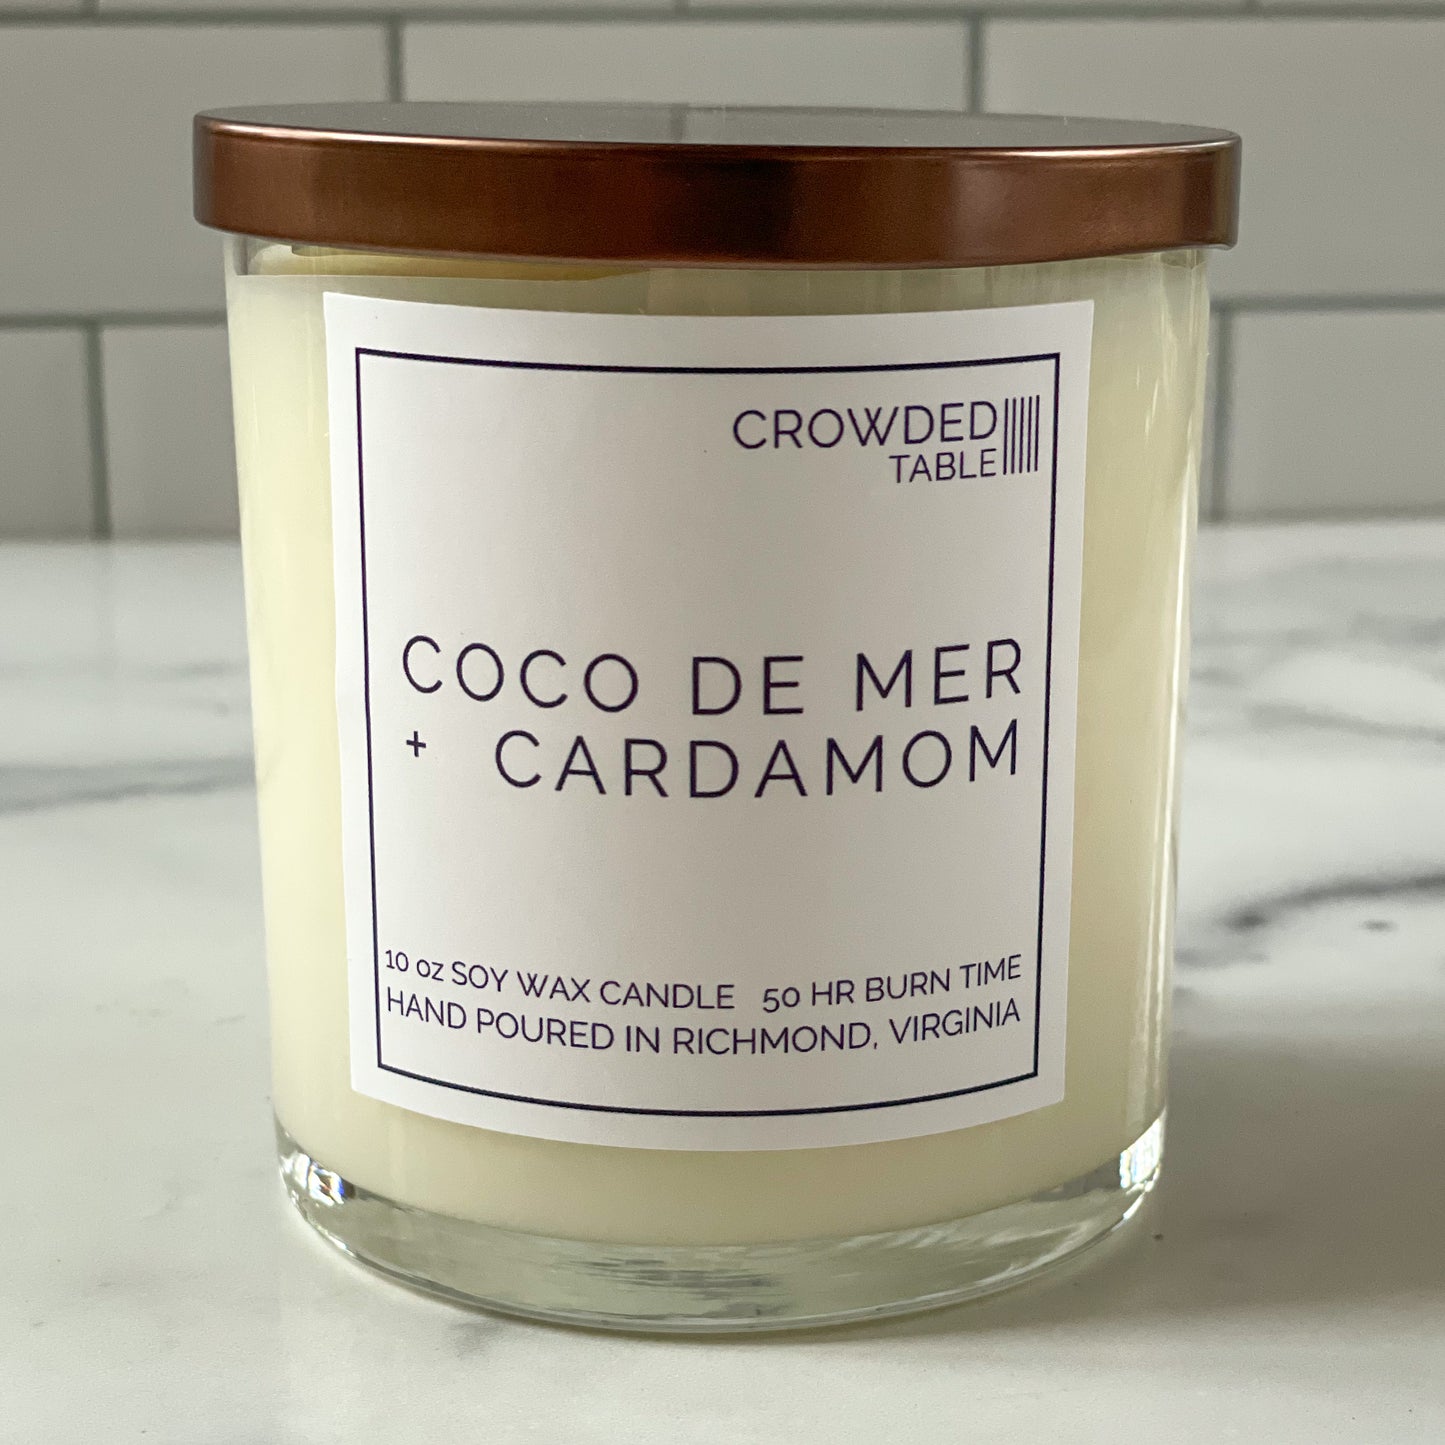 Coco de Mer + Cardamom 10 oz. Pure Soy Wax Candle